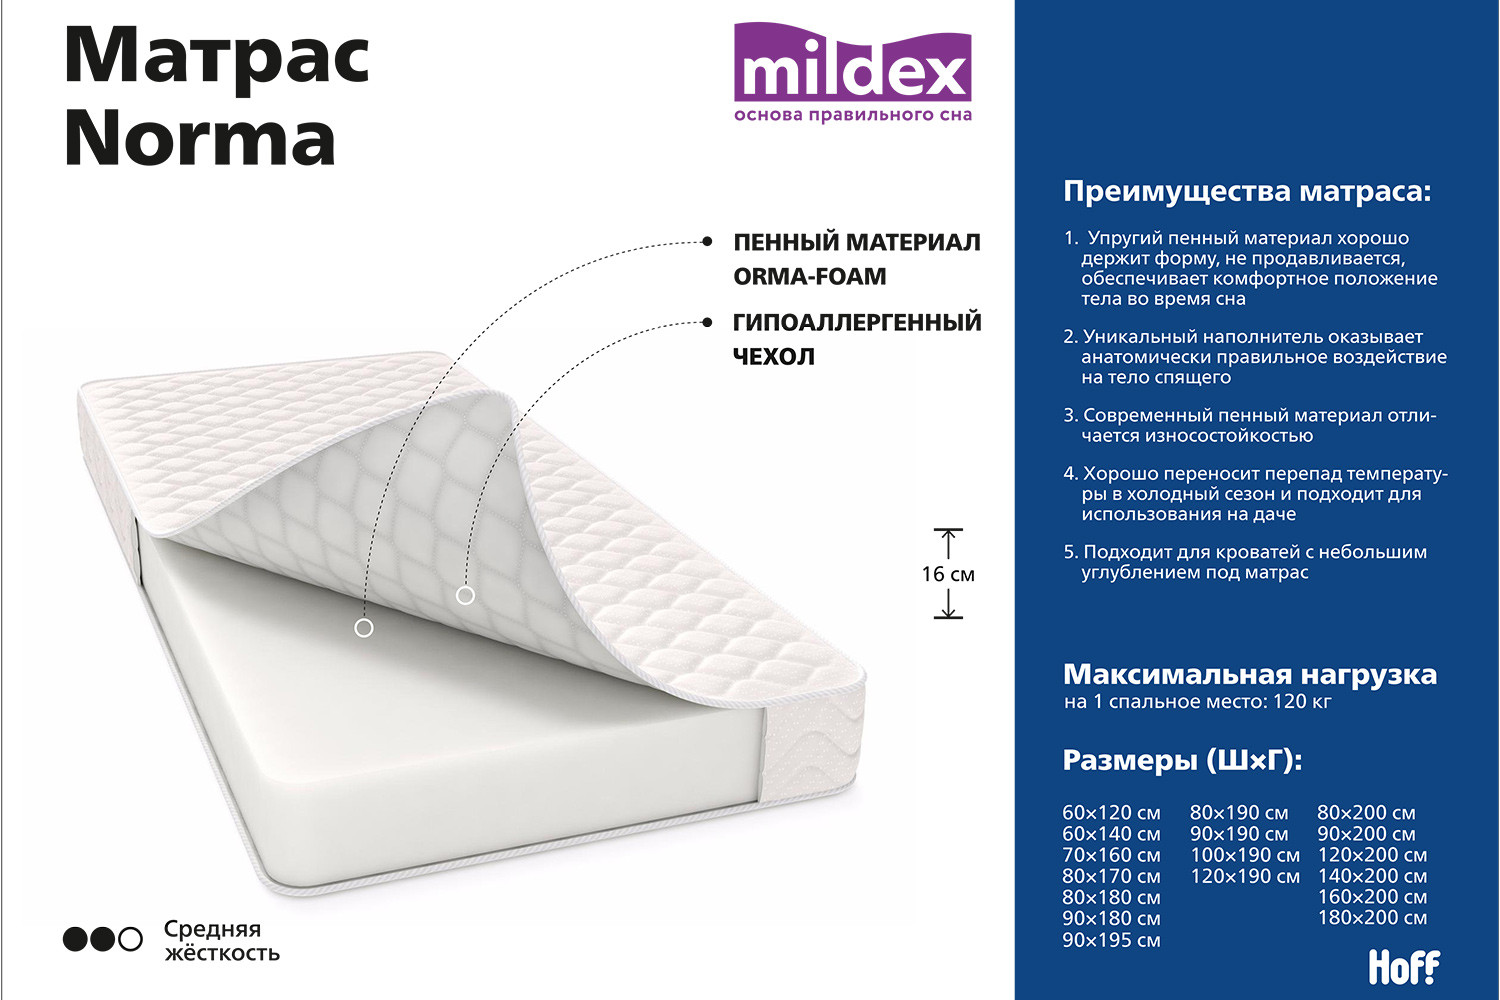 Анатомический матрас Mildex Norma 90x190 см